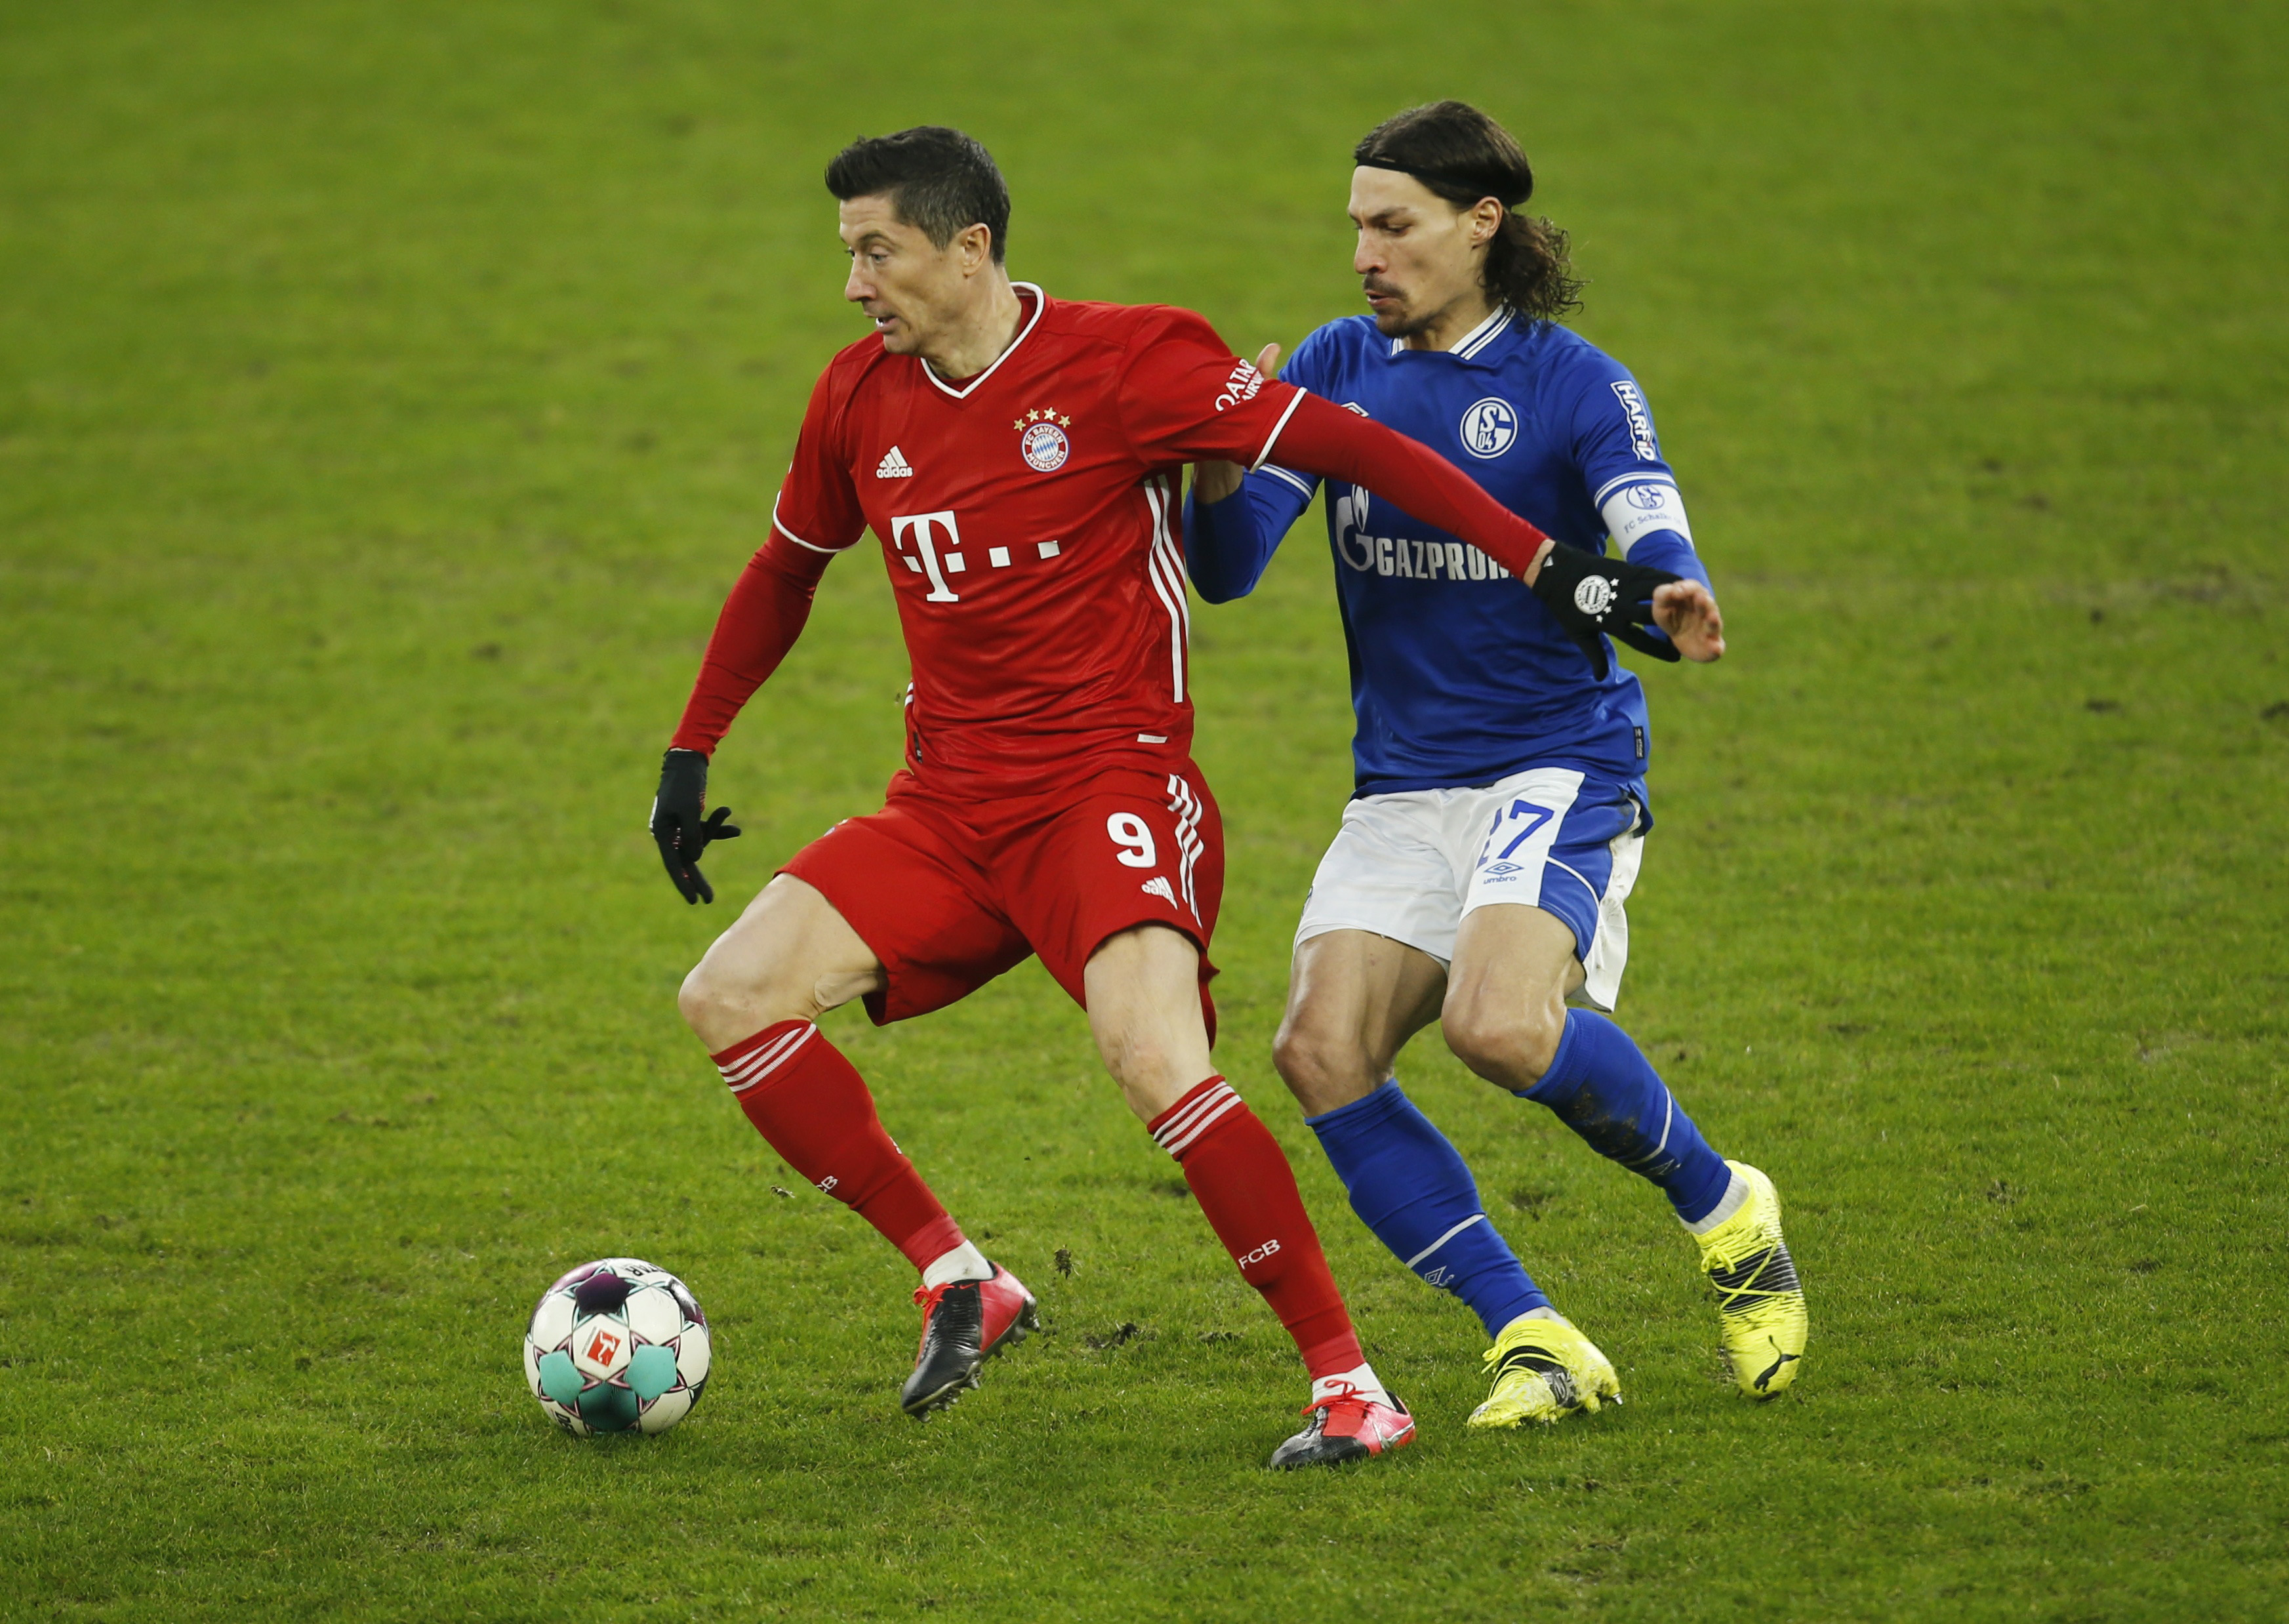 Bayern Munich's Robert Lewandowski in action with Schalke 04's Benjamin Stambouli. Photo: Reuters 